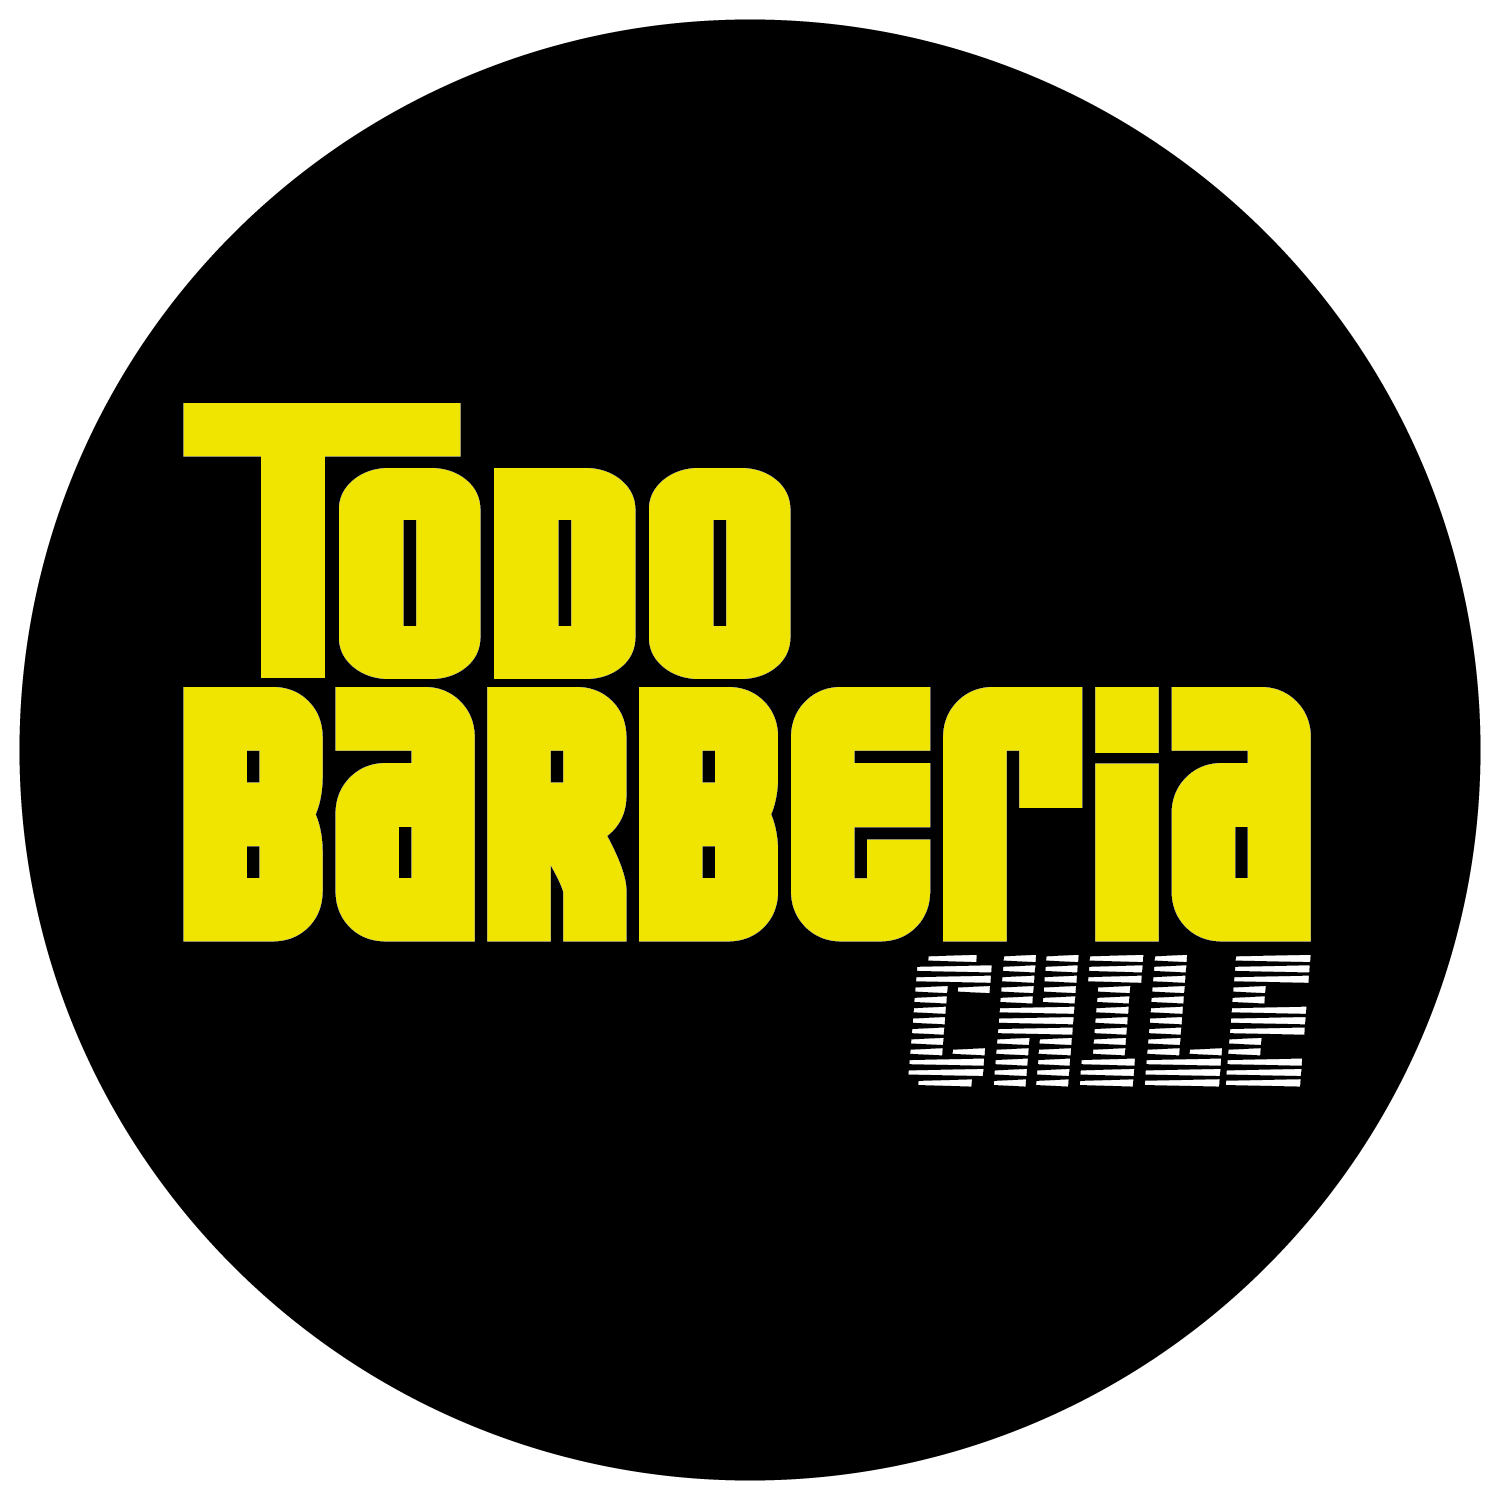 Capa peluqueria/barberia blanca con rayas – TodoBarberiaChile